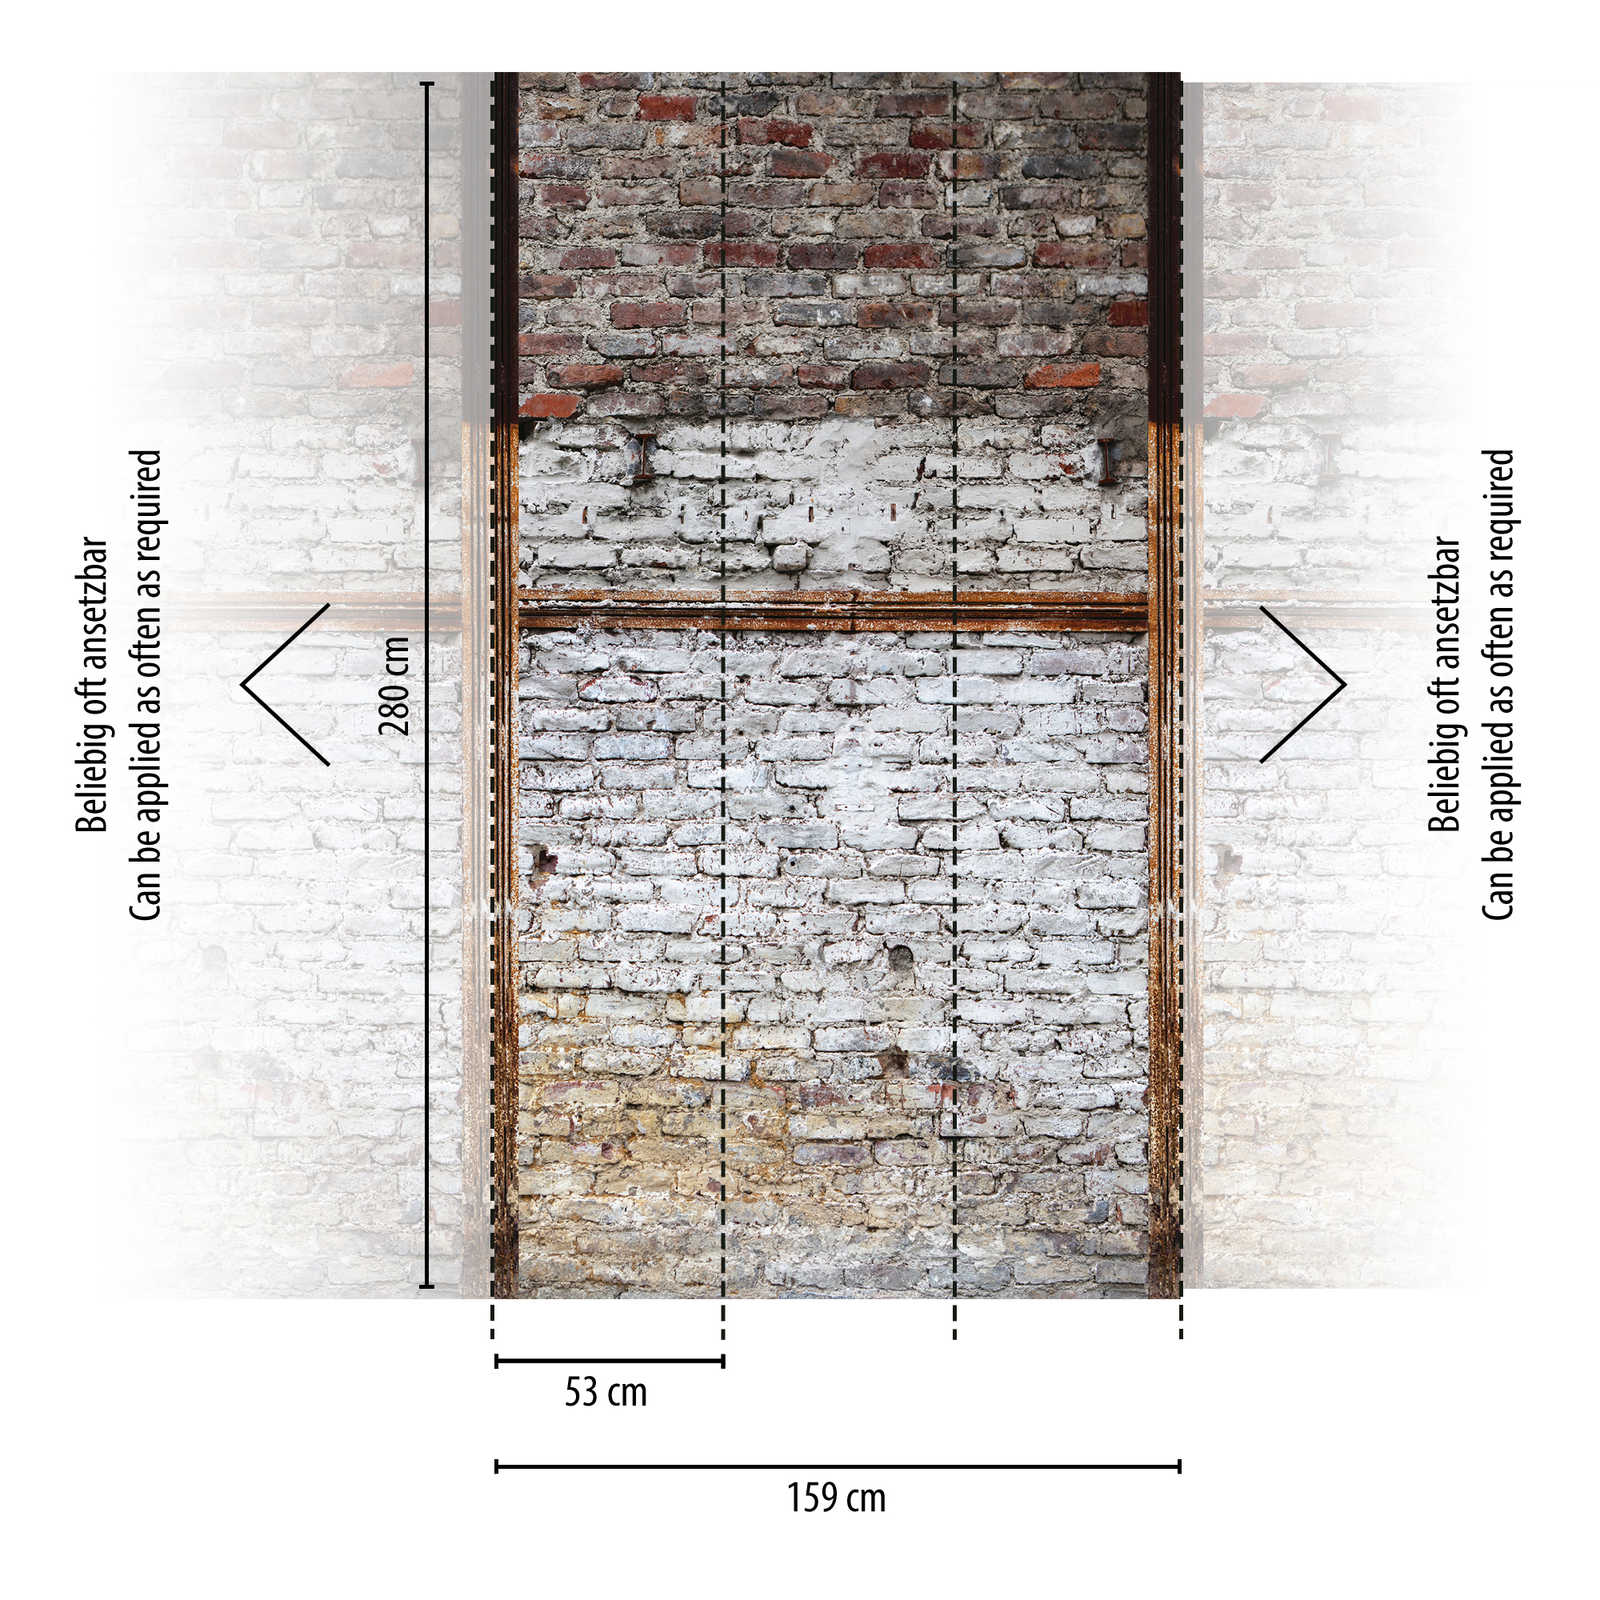             behang nieuwigheid | 3d motief behang industrieel ontwerp stenen muur rustiek
        